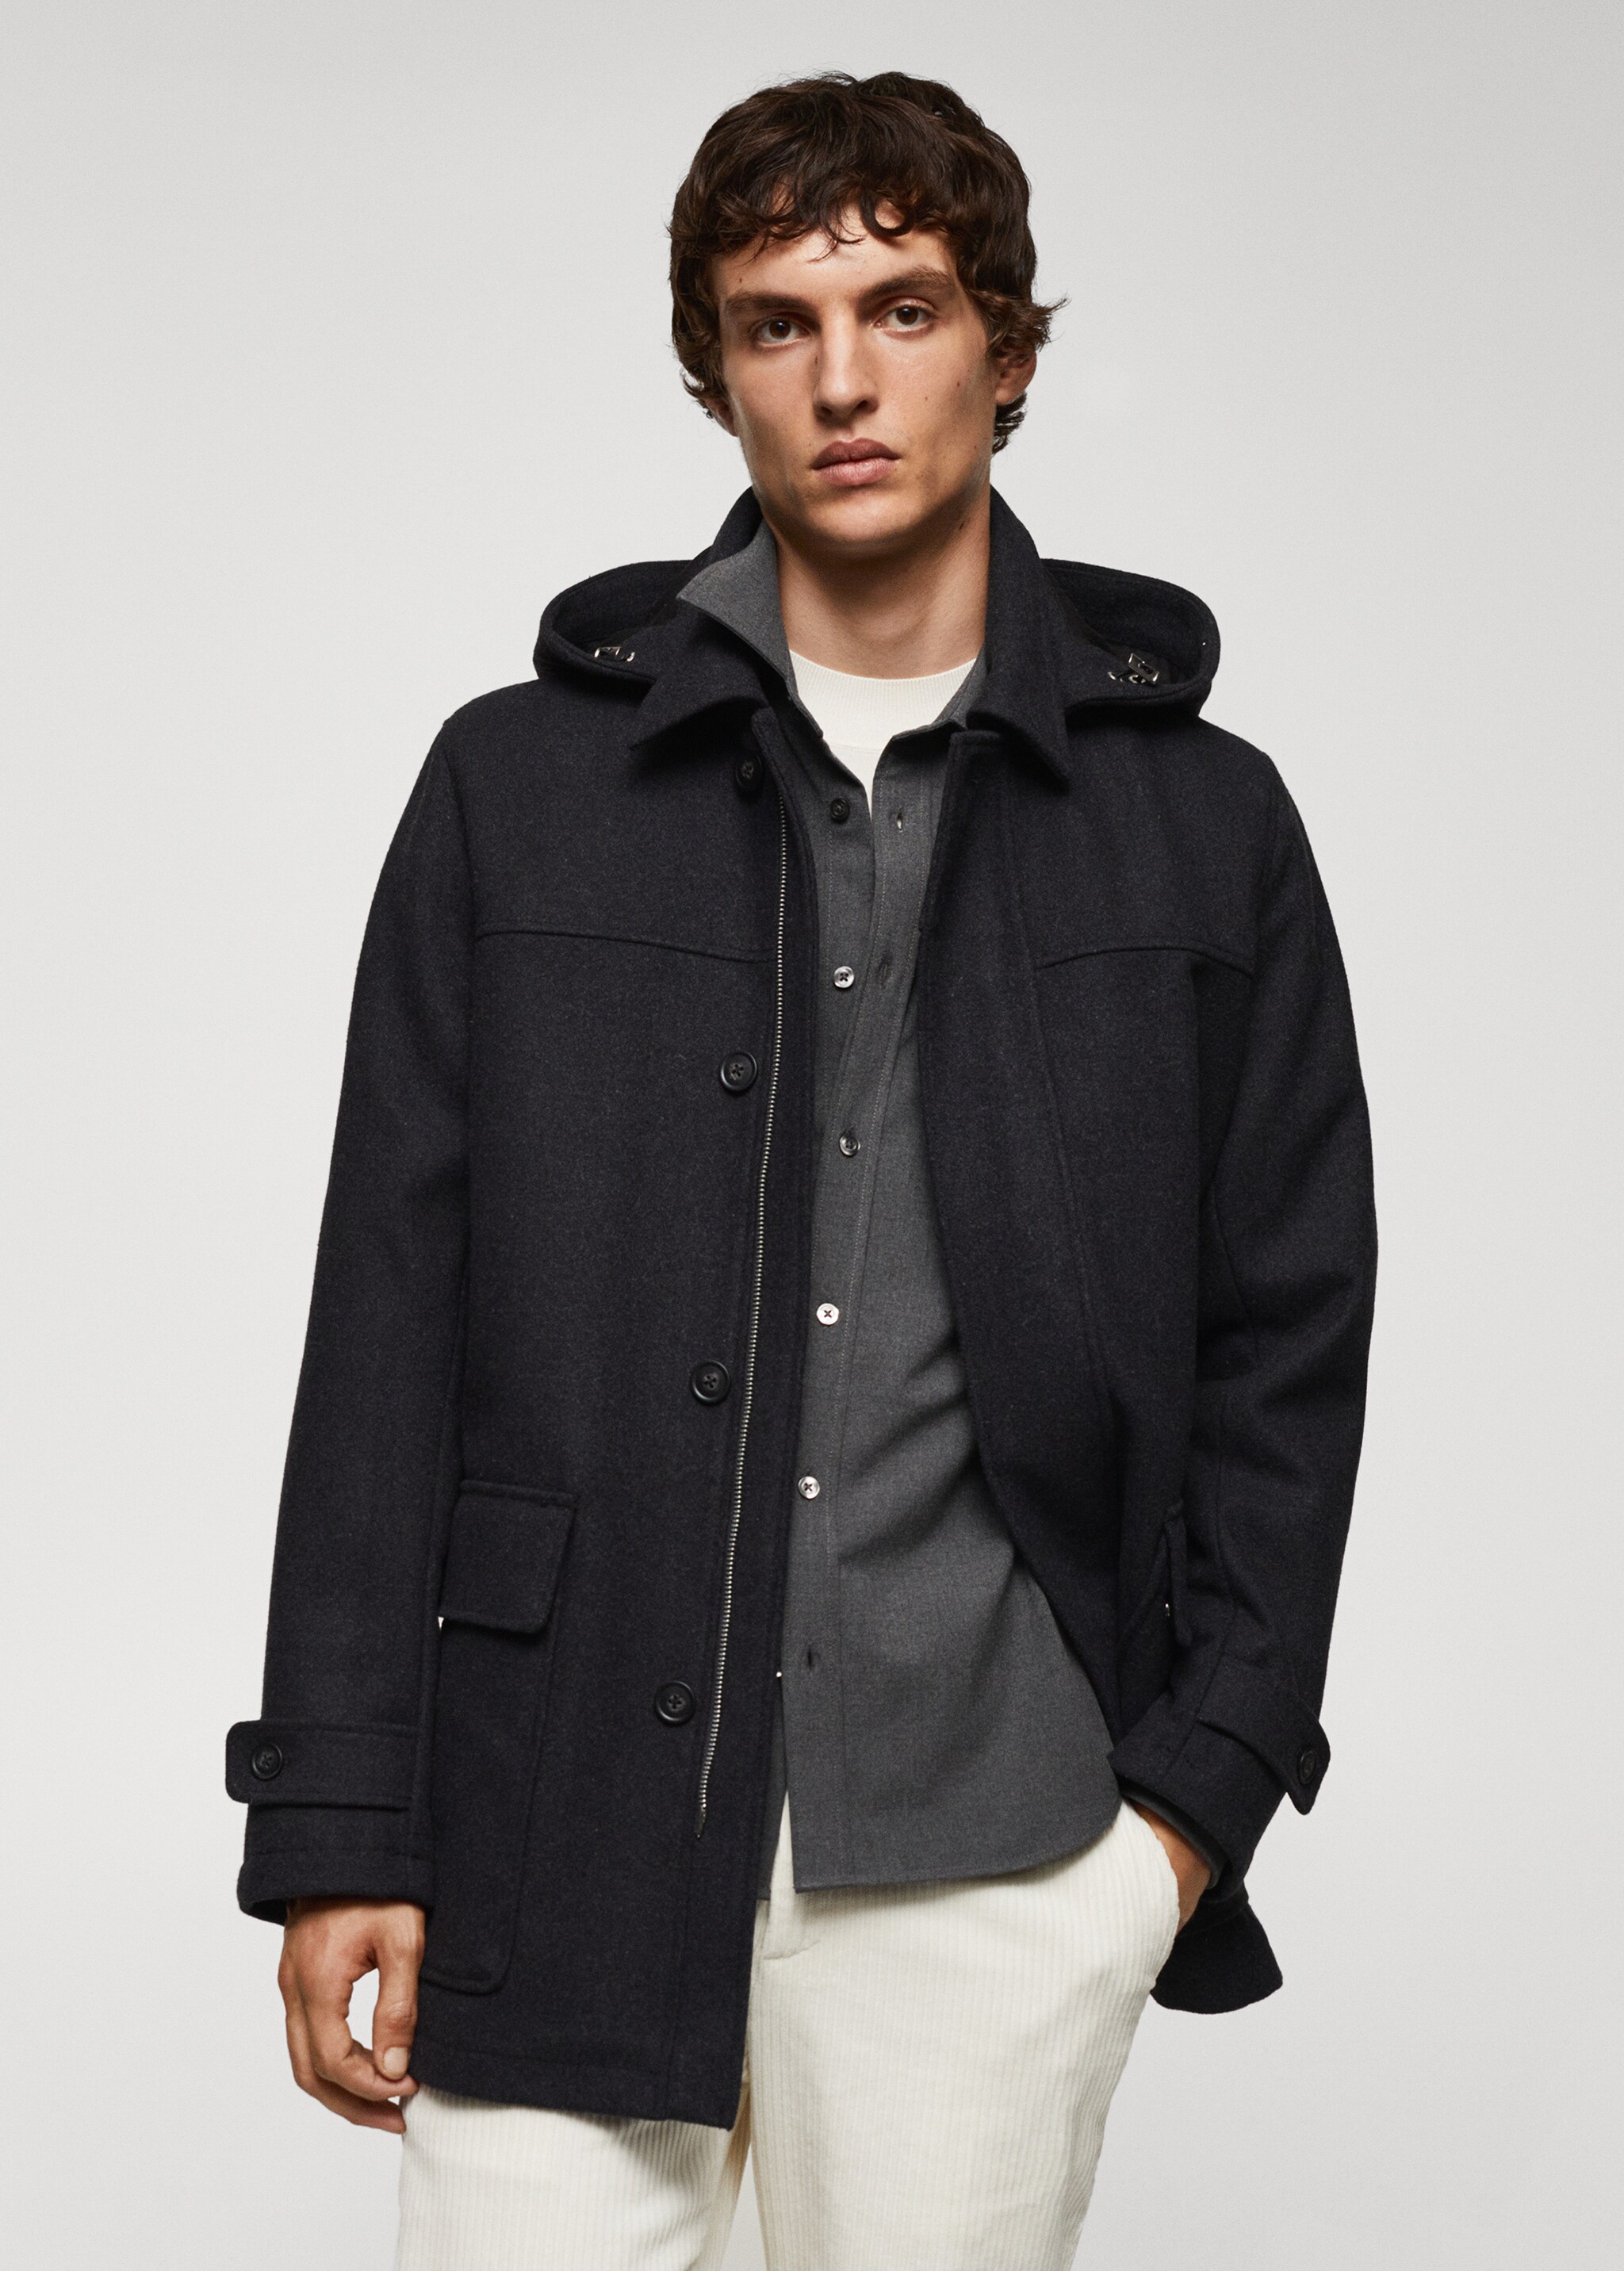 Пальто из шерсти со съемным капюшоном - Средний план